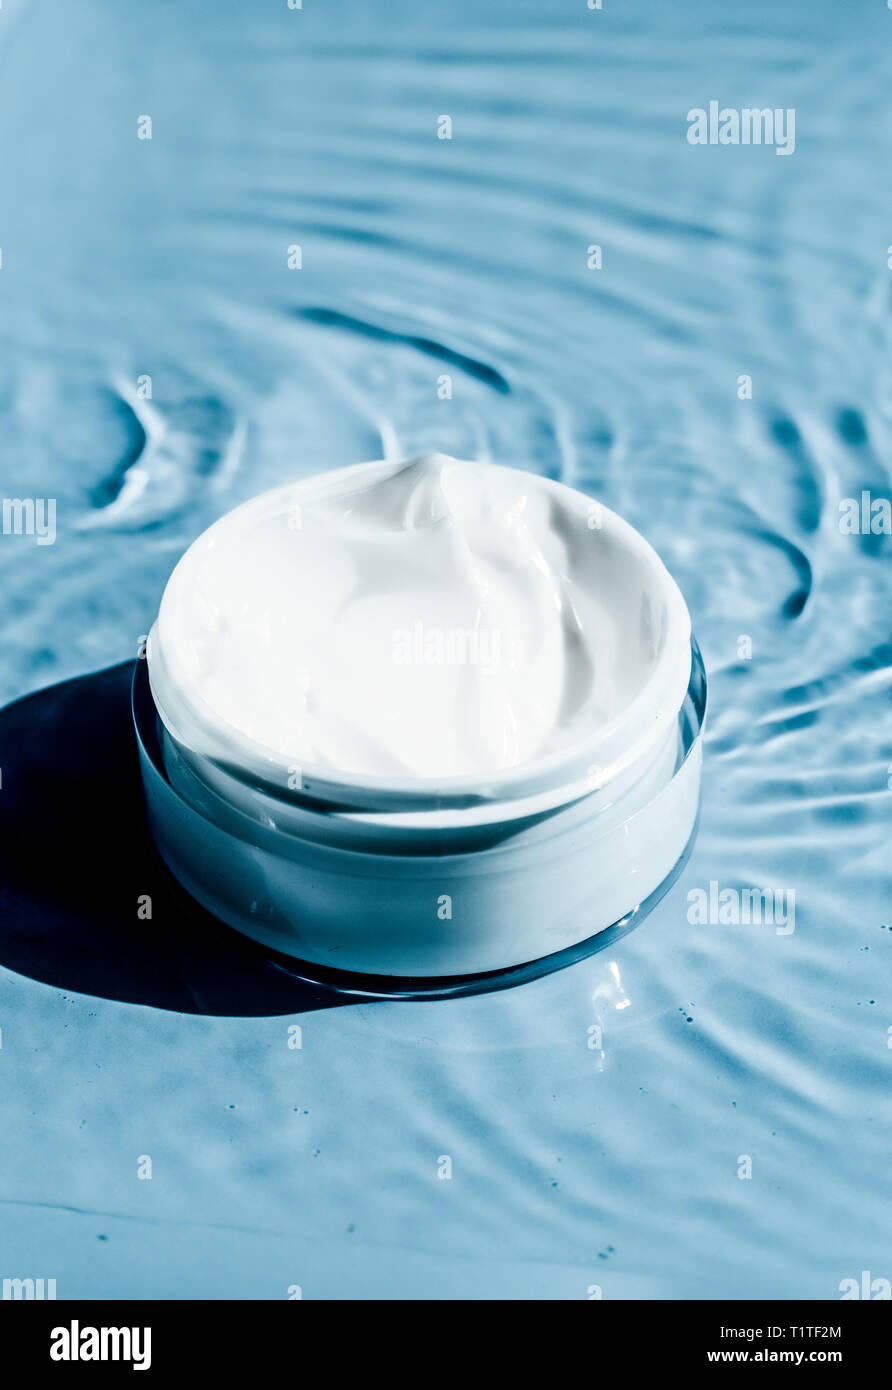 Sensible Skincare Feuchtigkeits-Creme auf Wasser Hintergrund - sauber  Schönheit, Kosmetik und Luxus Körperpflege Konzept. Naturwissenschaften für  Ihre Haut Stockfotografie - Alamy